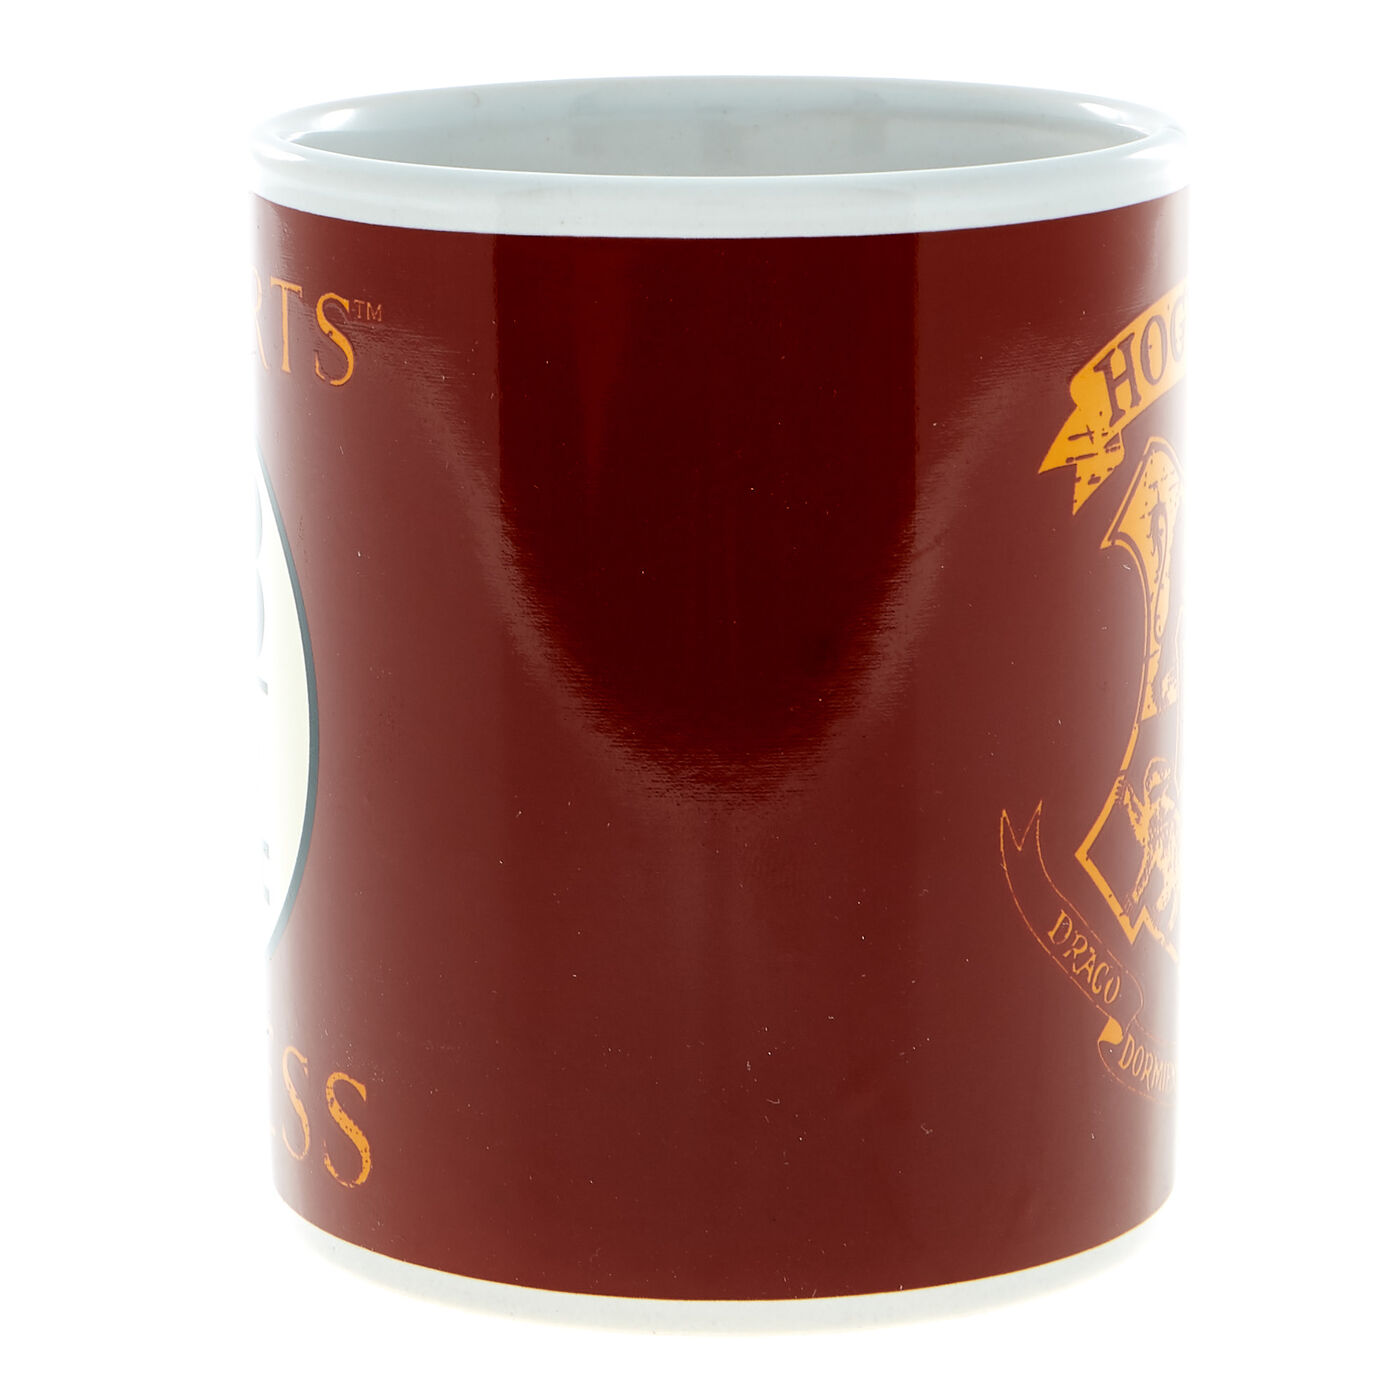 Buy Harry Potter Mug for GBP 4.99